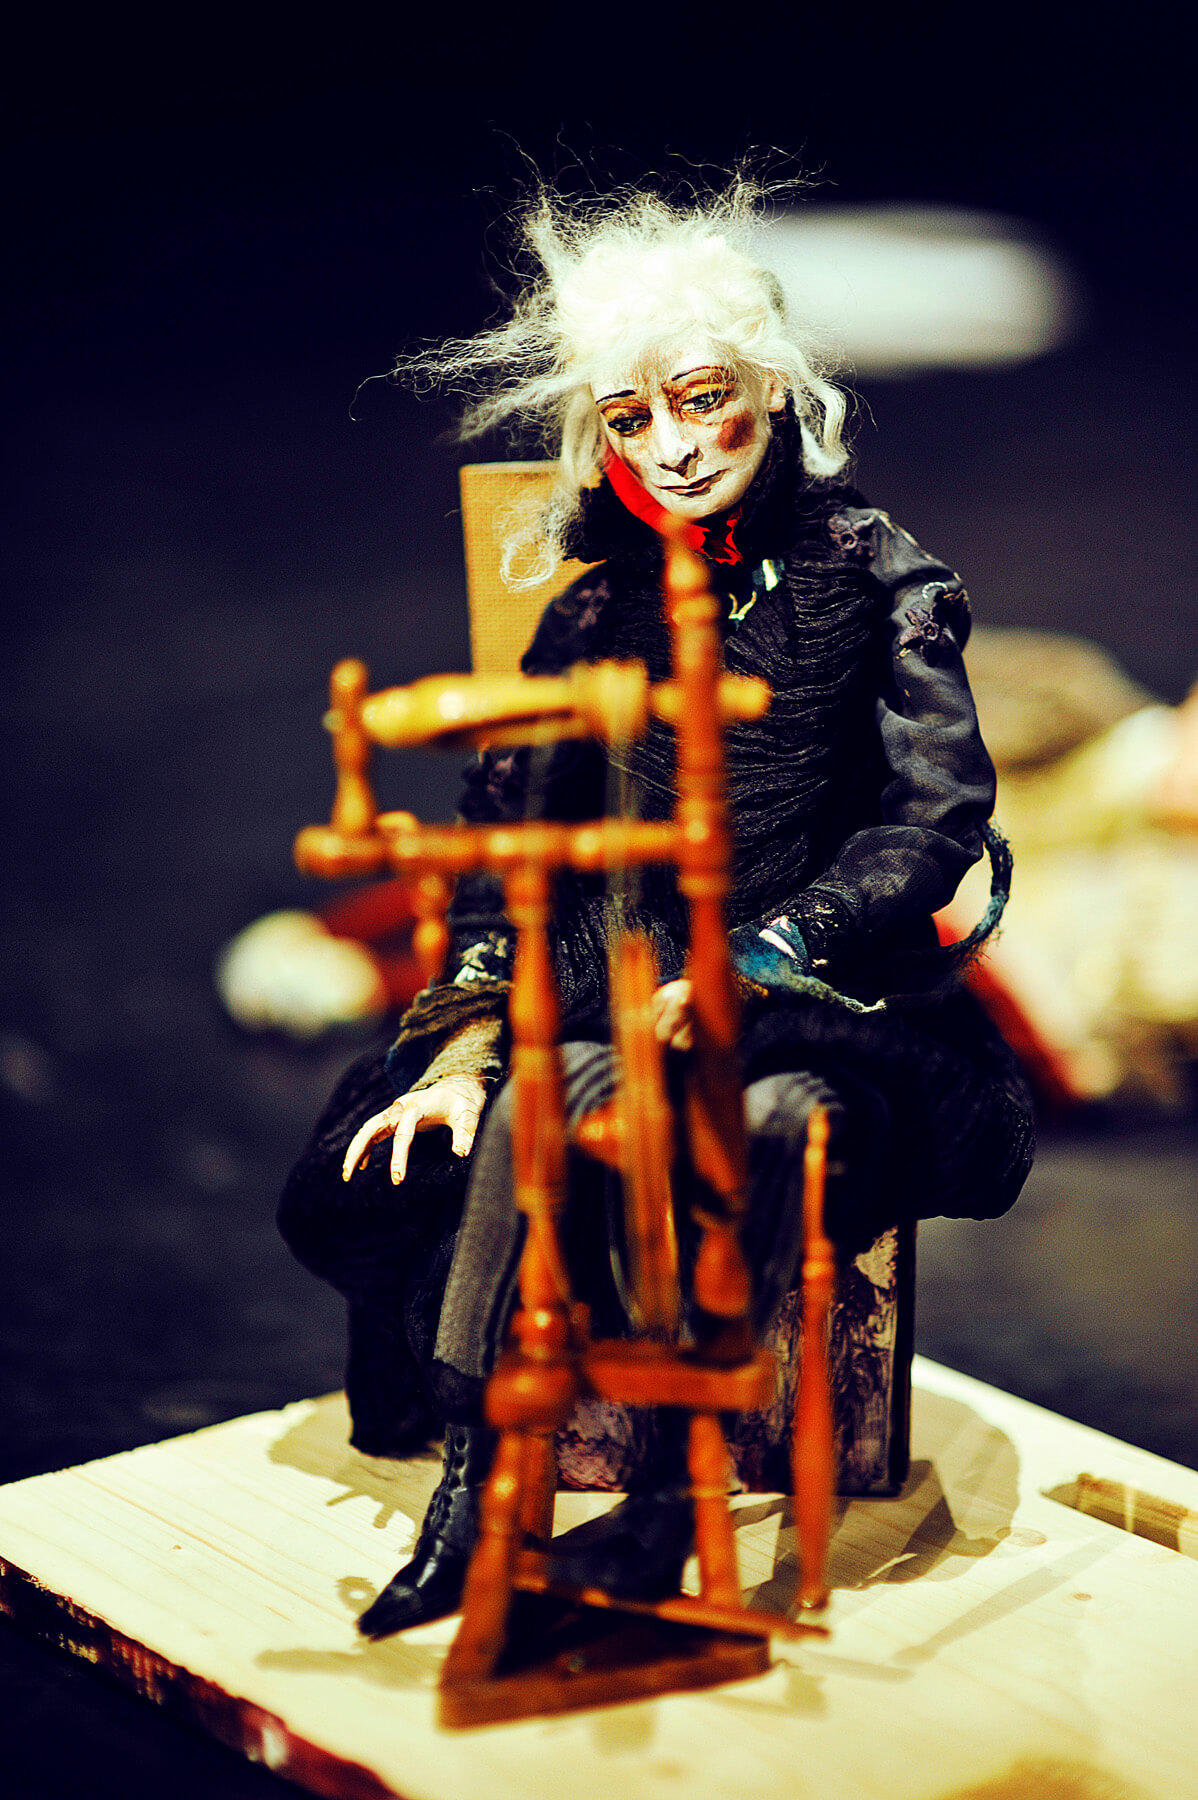 Zdjęcie do spektaklu spiąca Królewna. Pokazuje lalkę czarownicy siedzącą przy kołowrotku.